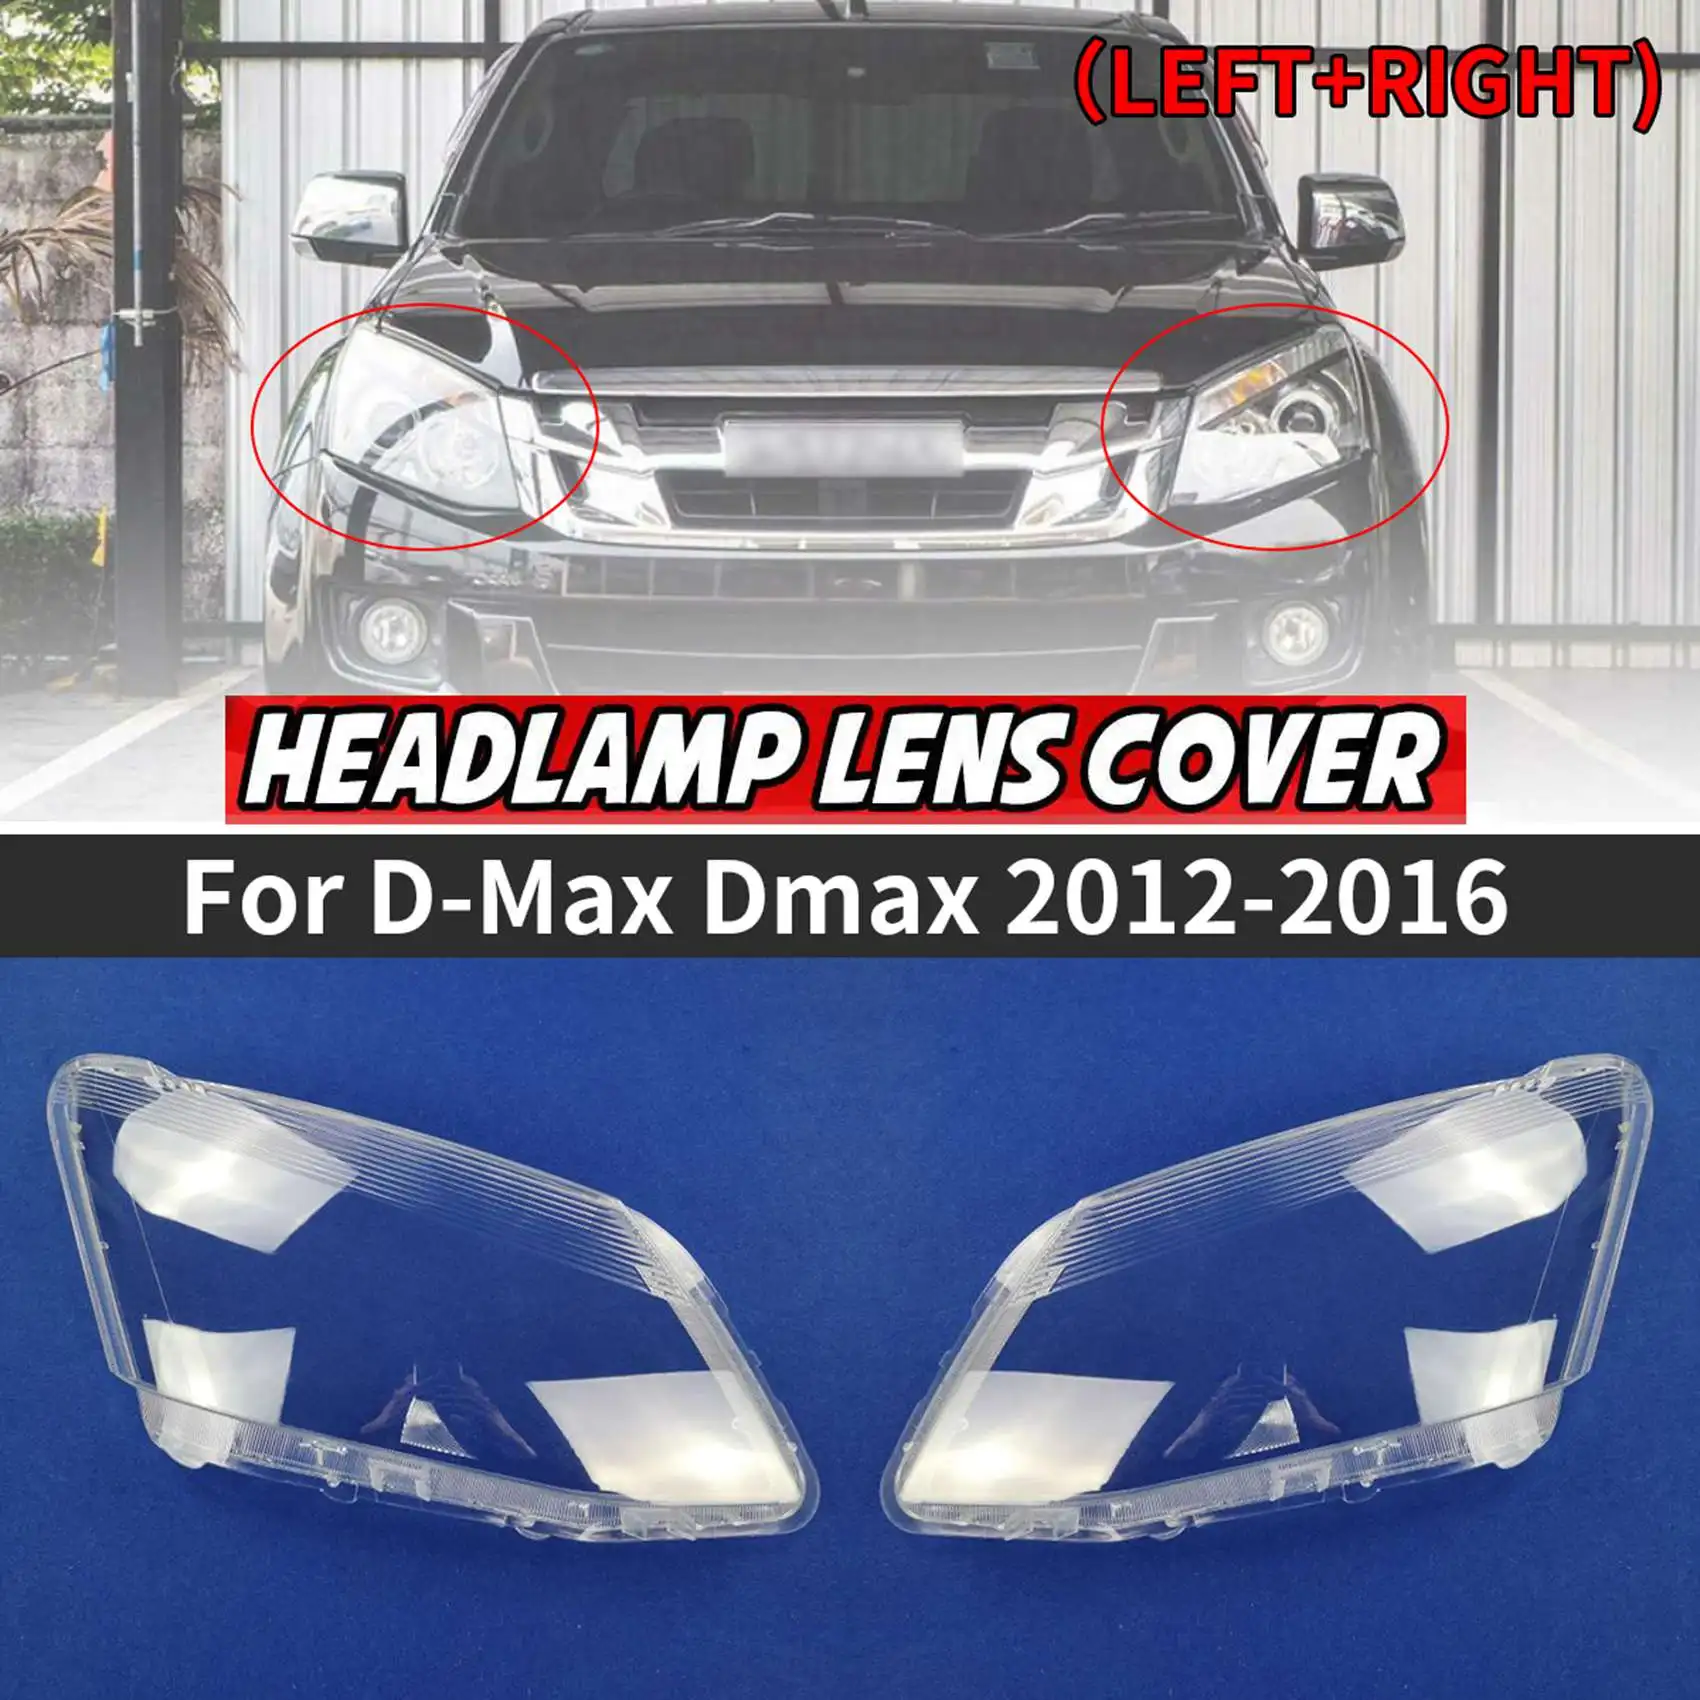 

Правая сторона для автомобильной фары Isuzu D-Max Dmax 2012-2016, крышка объектива передней фары, лампа головного света, прозрачный абажур, корпус из стекла LH